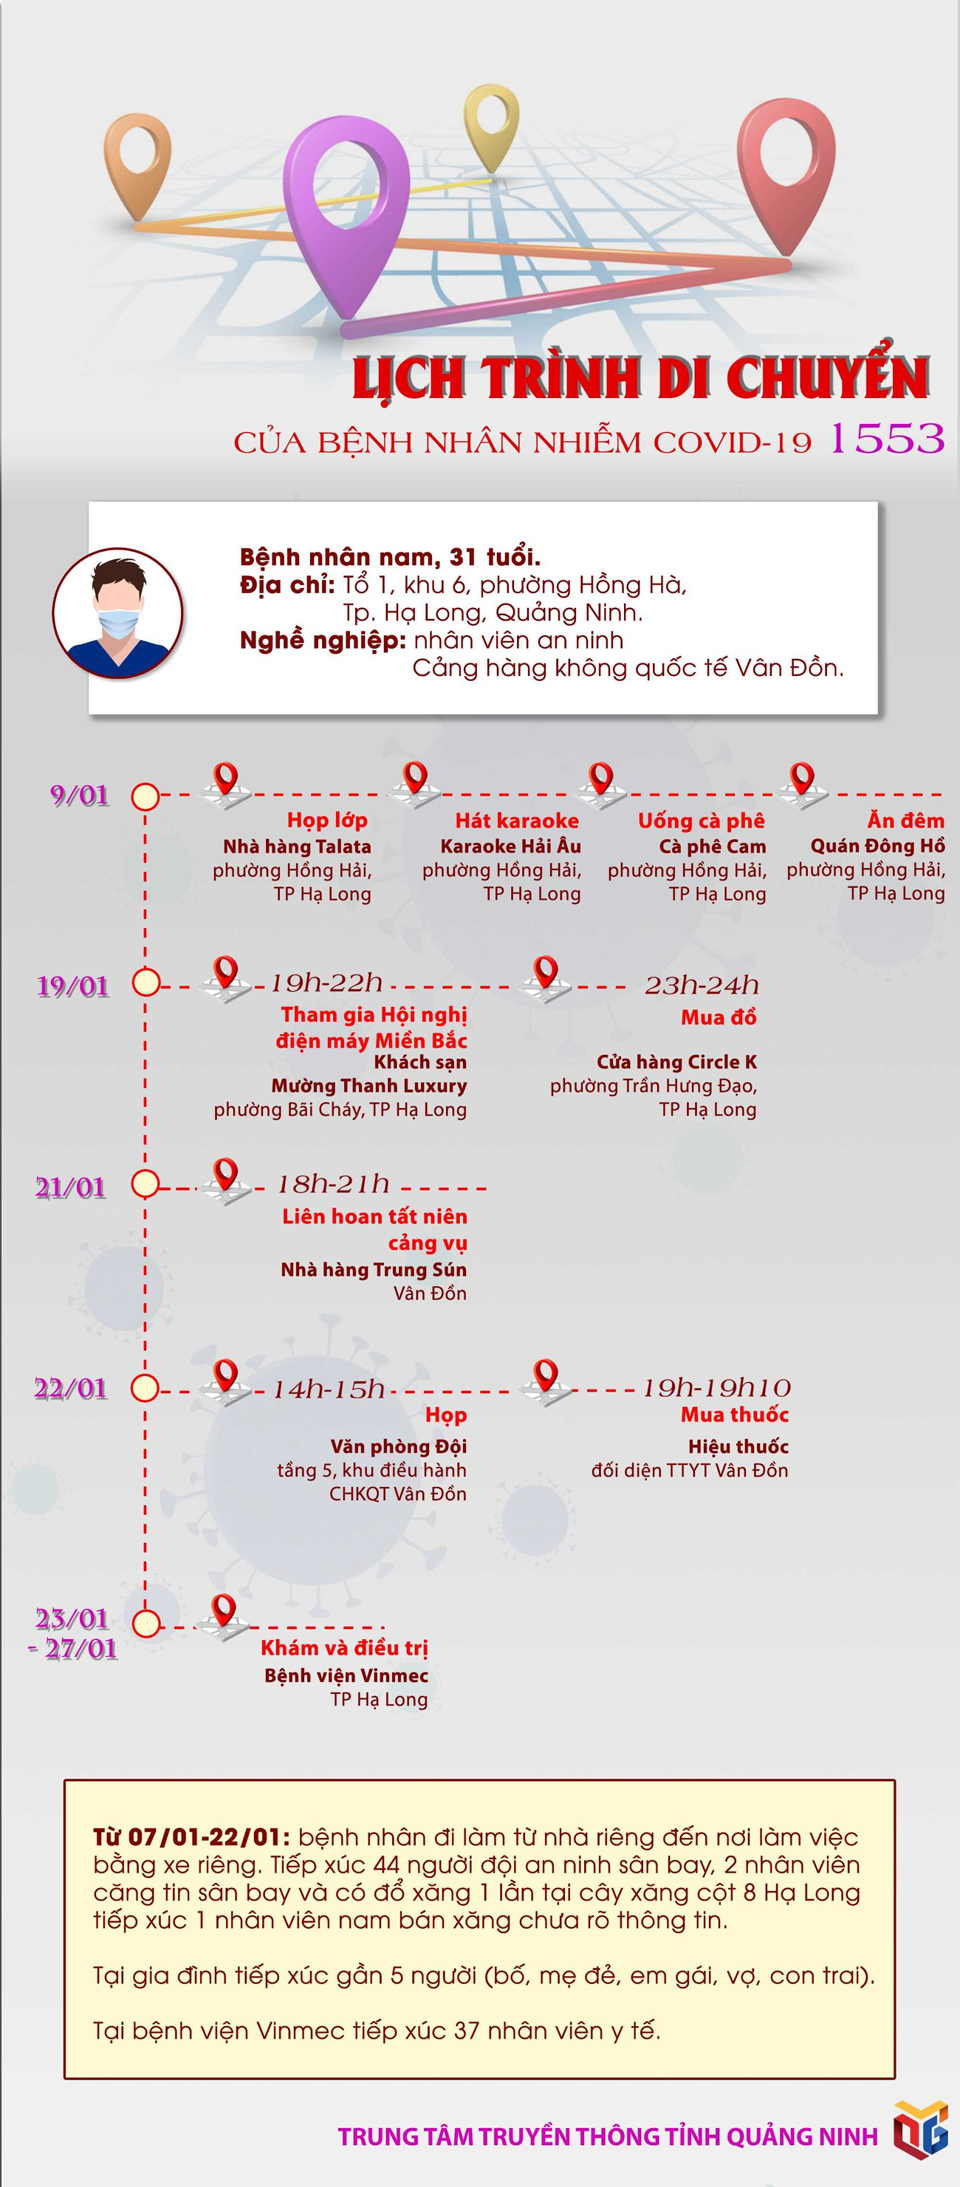 [Infographic] Chi tiết lịch trình của bệnh nhân nhiễm Covid-19 số 1553 - Ảnh 1